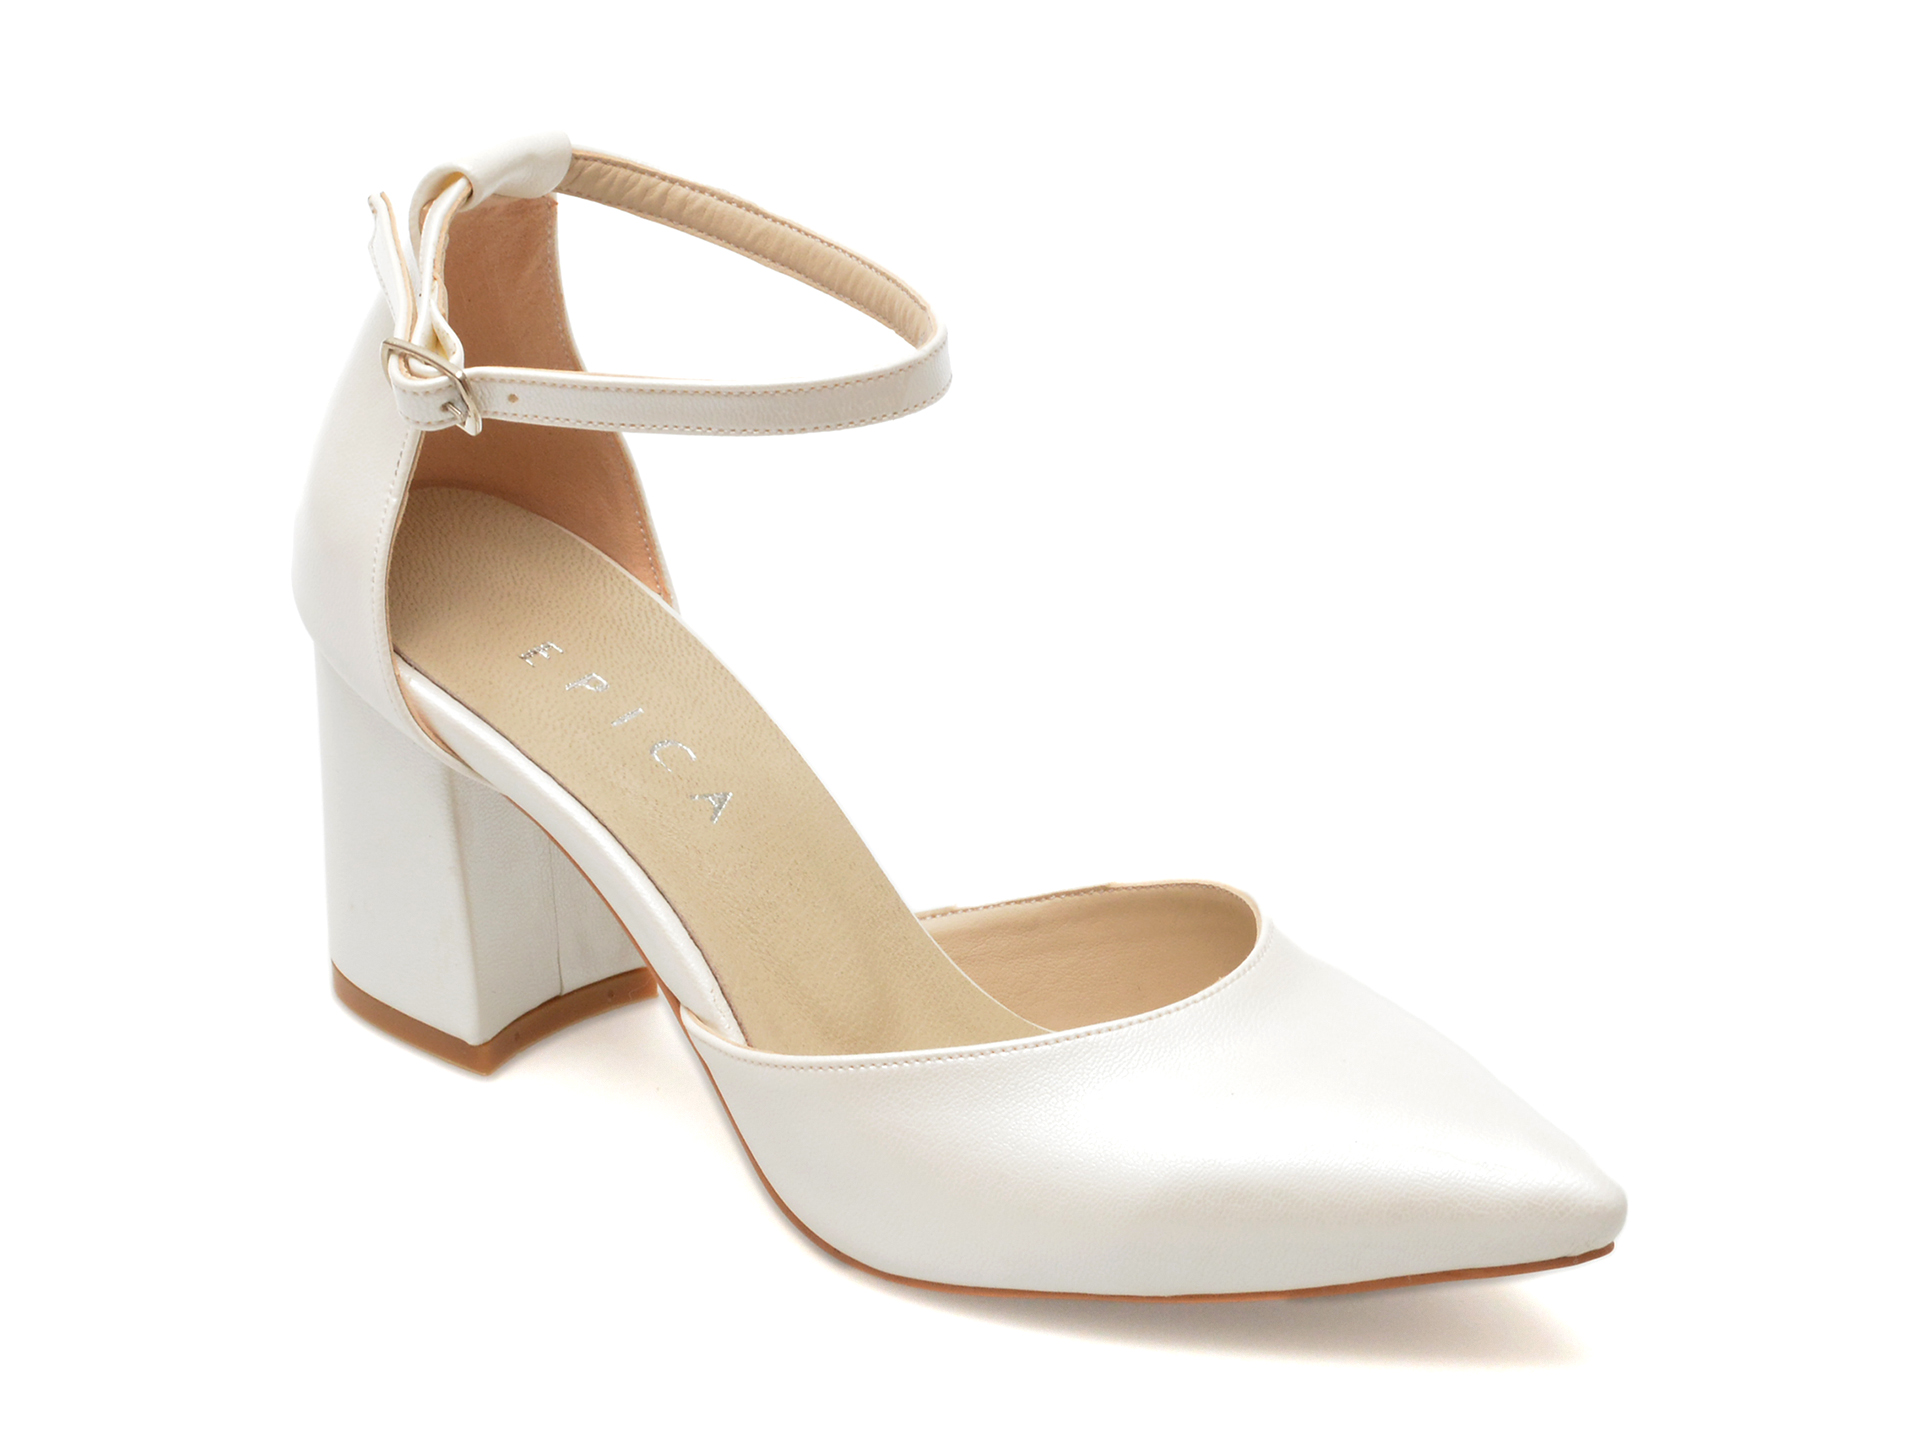 Pantofi eleganti EPICA albi, 391, din piele ecologica